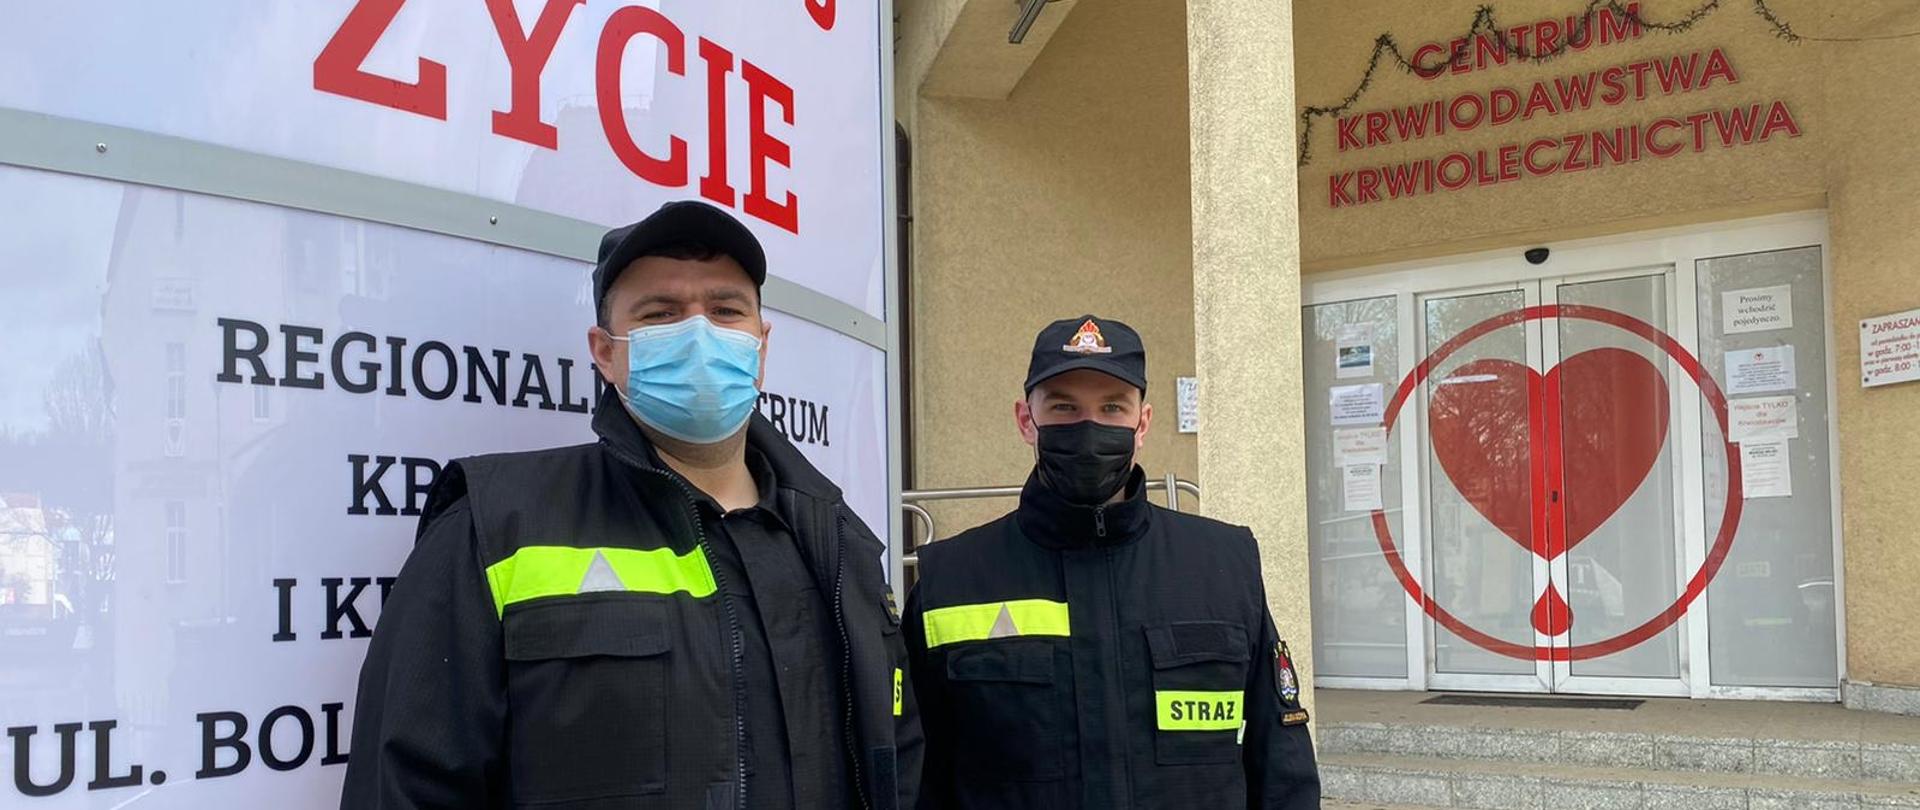 Dwóch mężczyzn - strażaków stoi w mundurze przed wejściem do szpitala